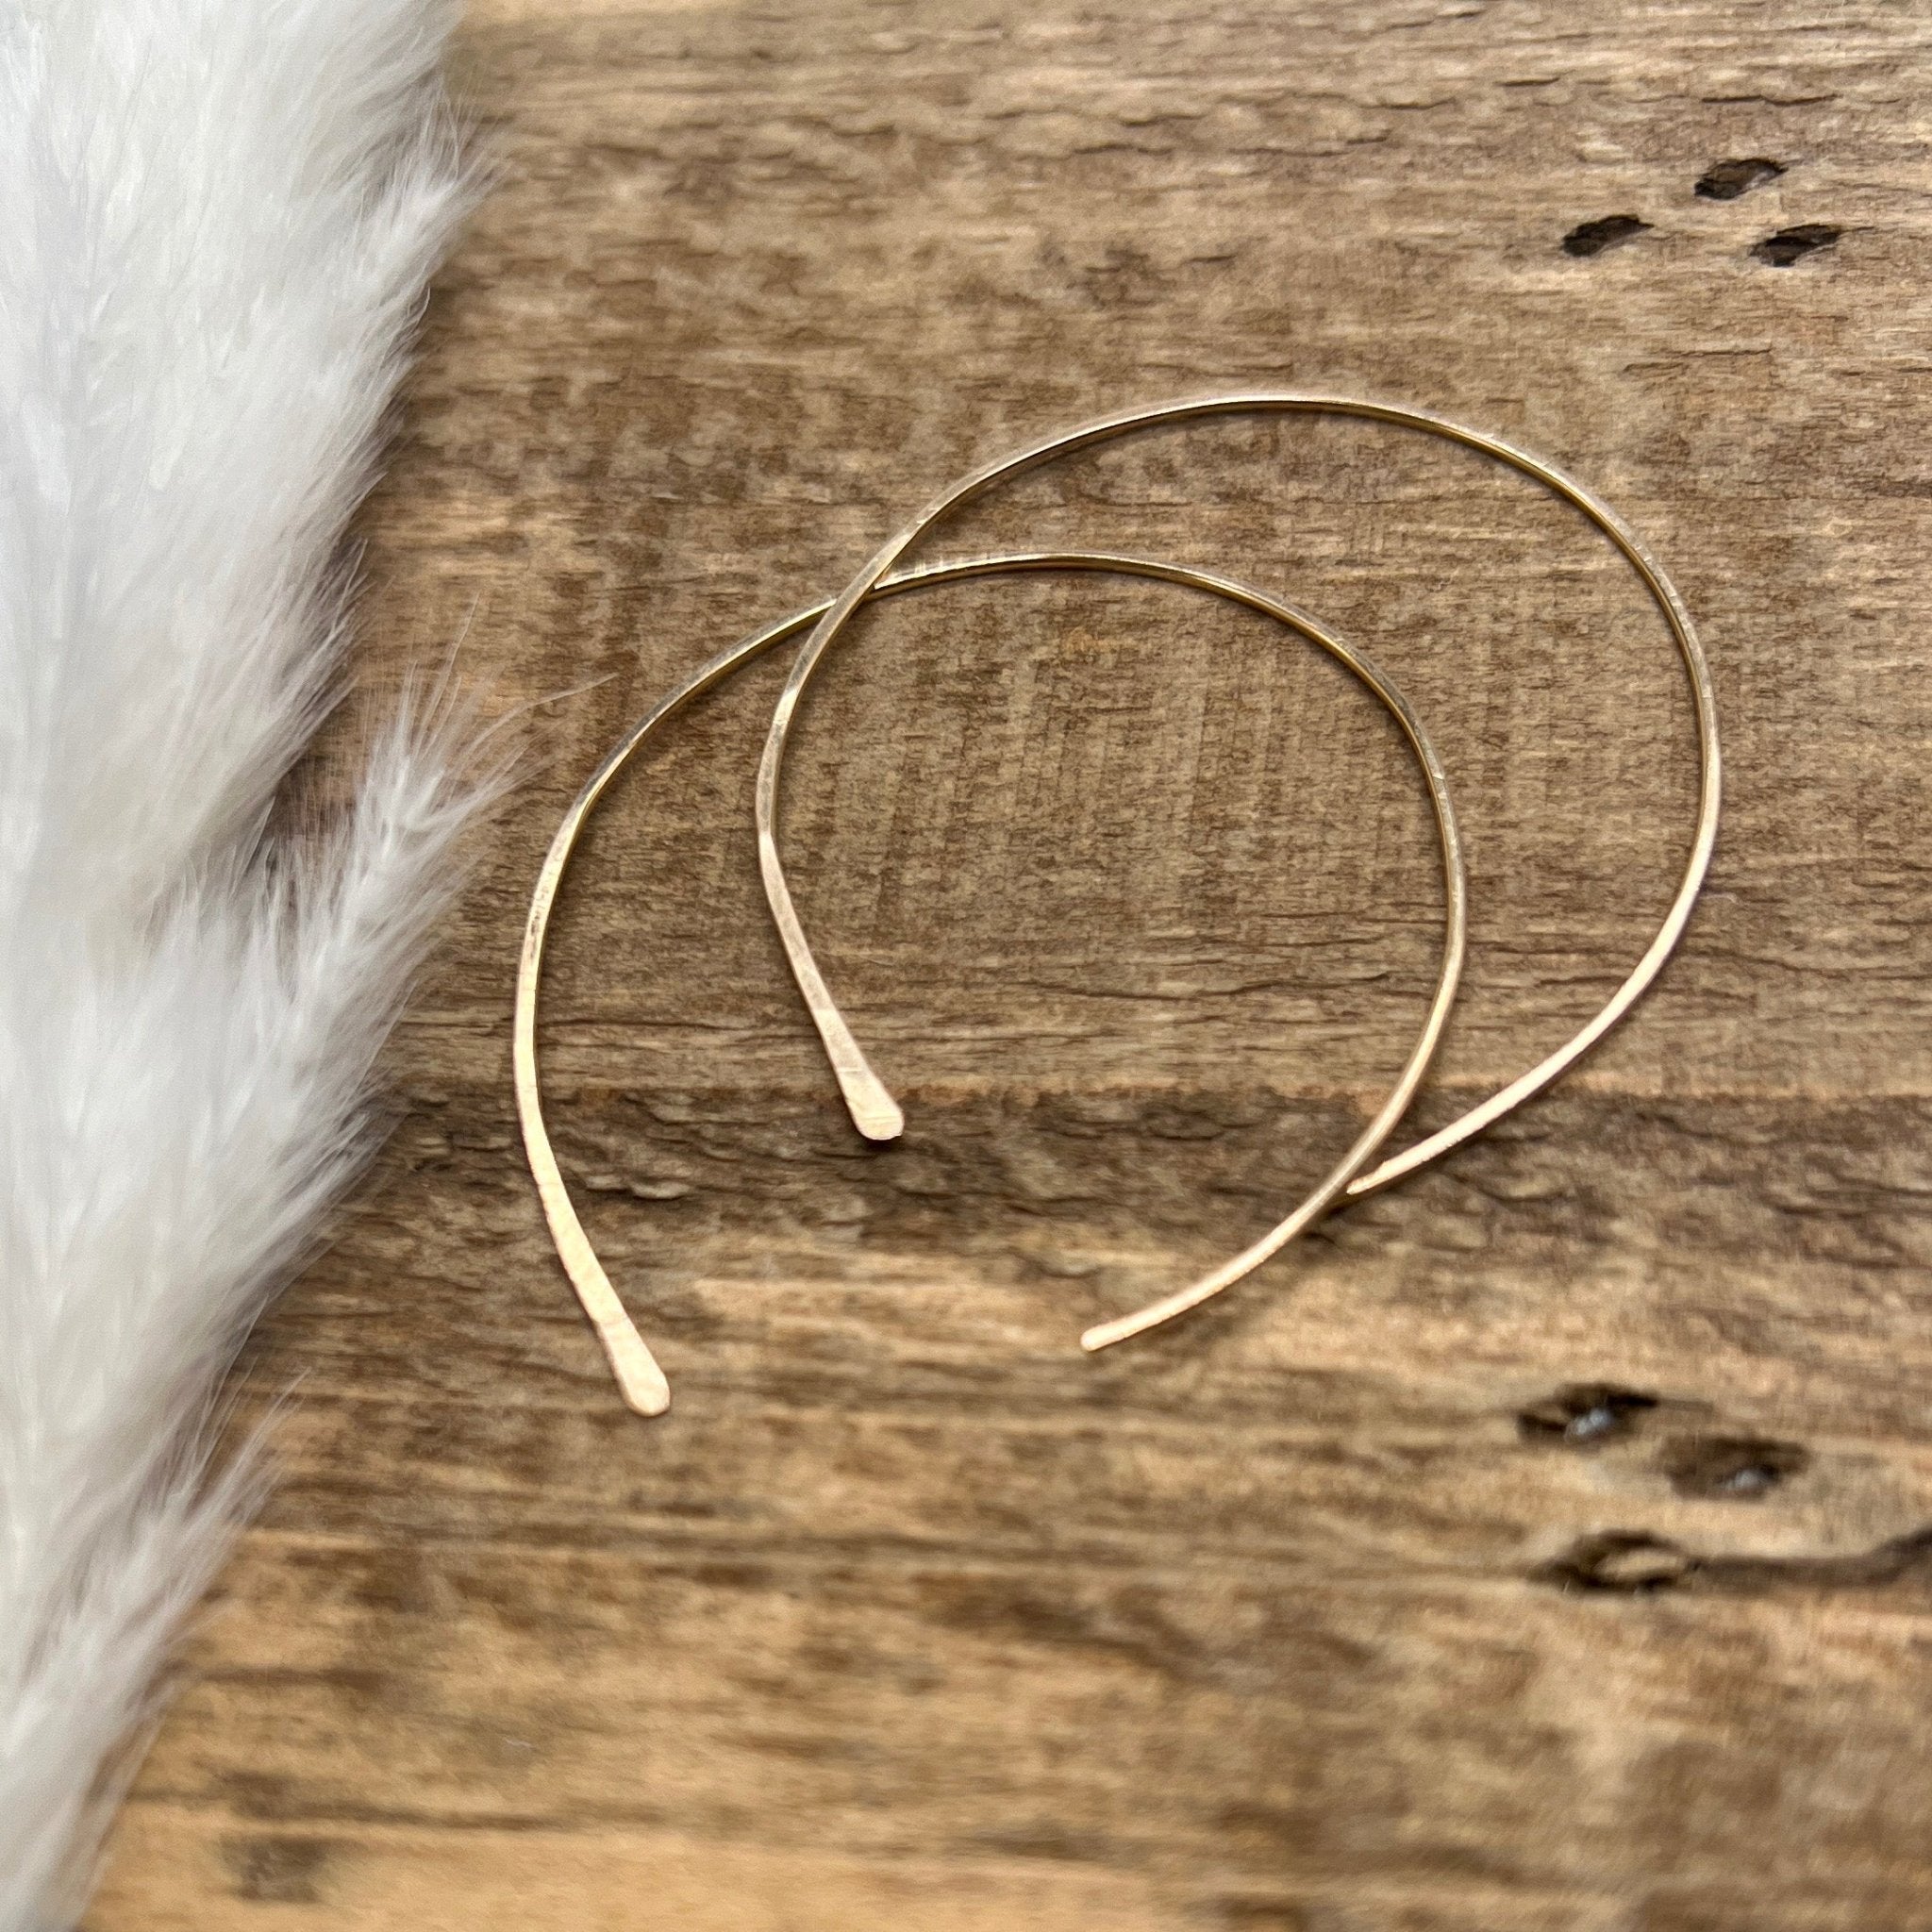 Large Wire, Open Hoop Earrings - Sela+Sage - Hoop Earrings